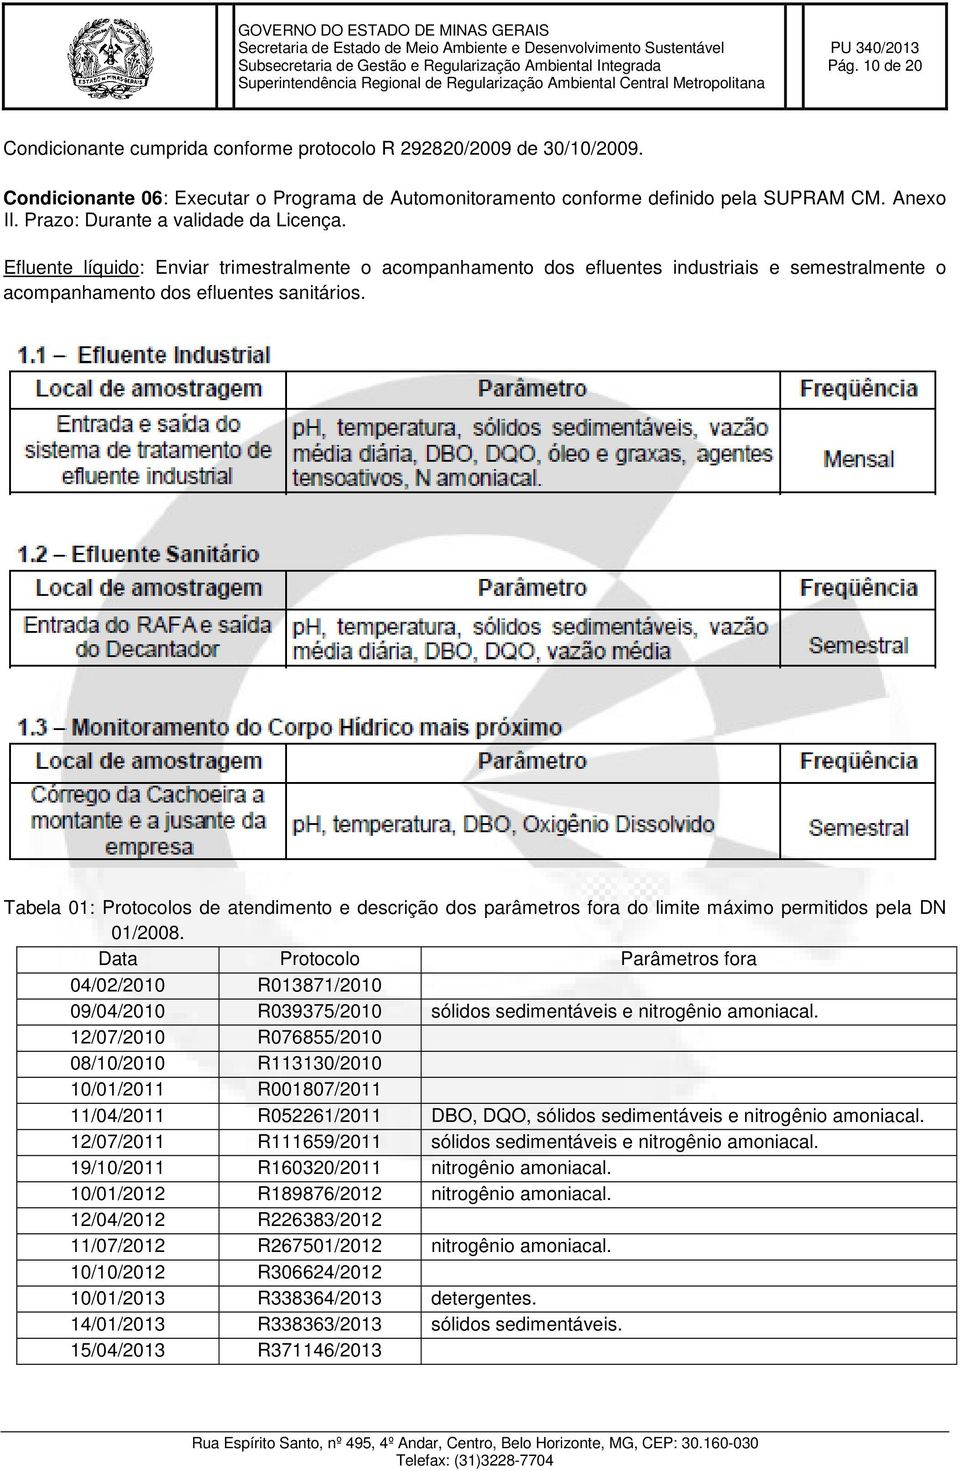 Tabela 01: Protocolos de atendimento e descrição dos parâmetros fora do limite máximo permitidos pela DN 01/2008.